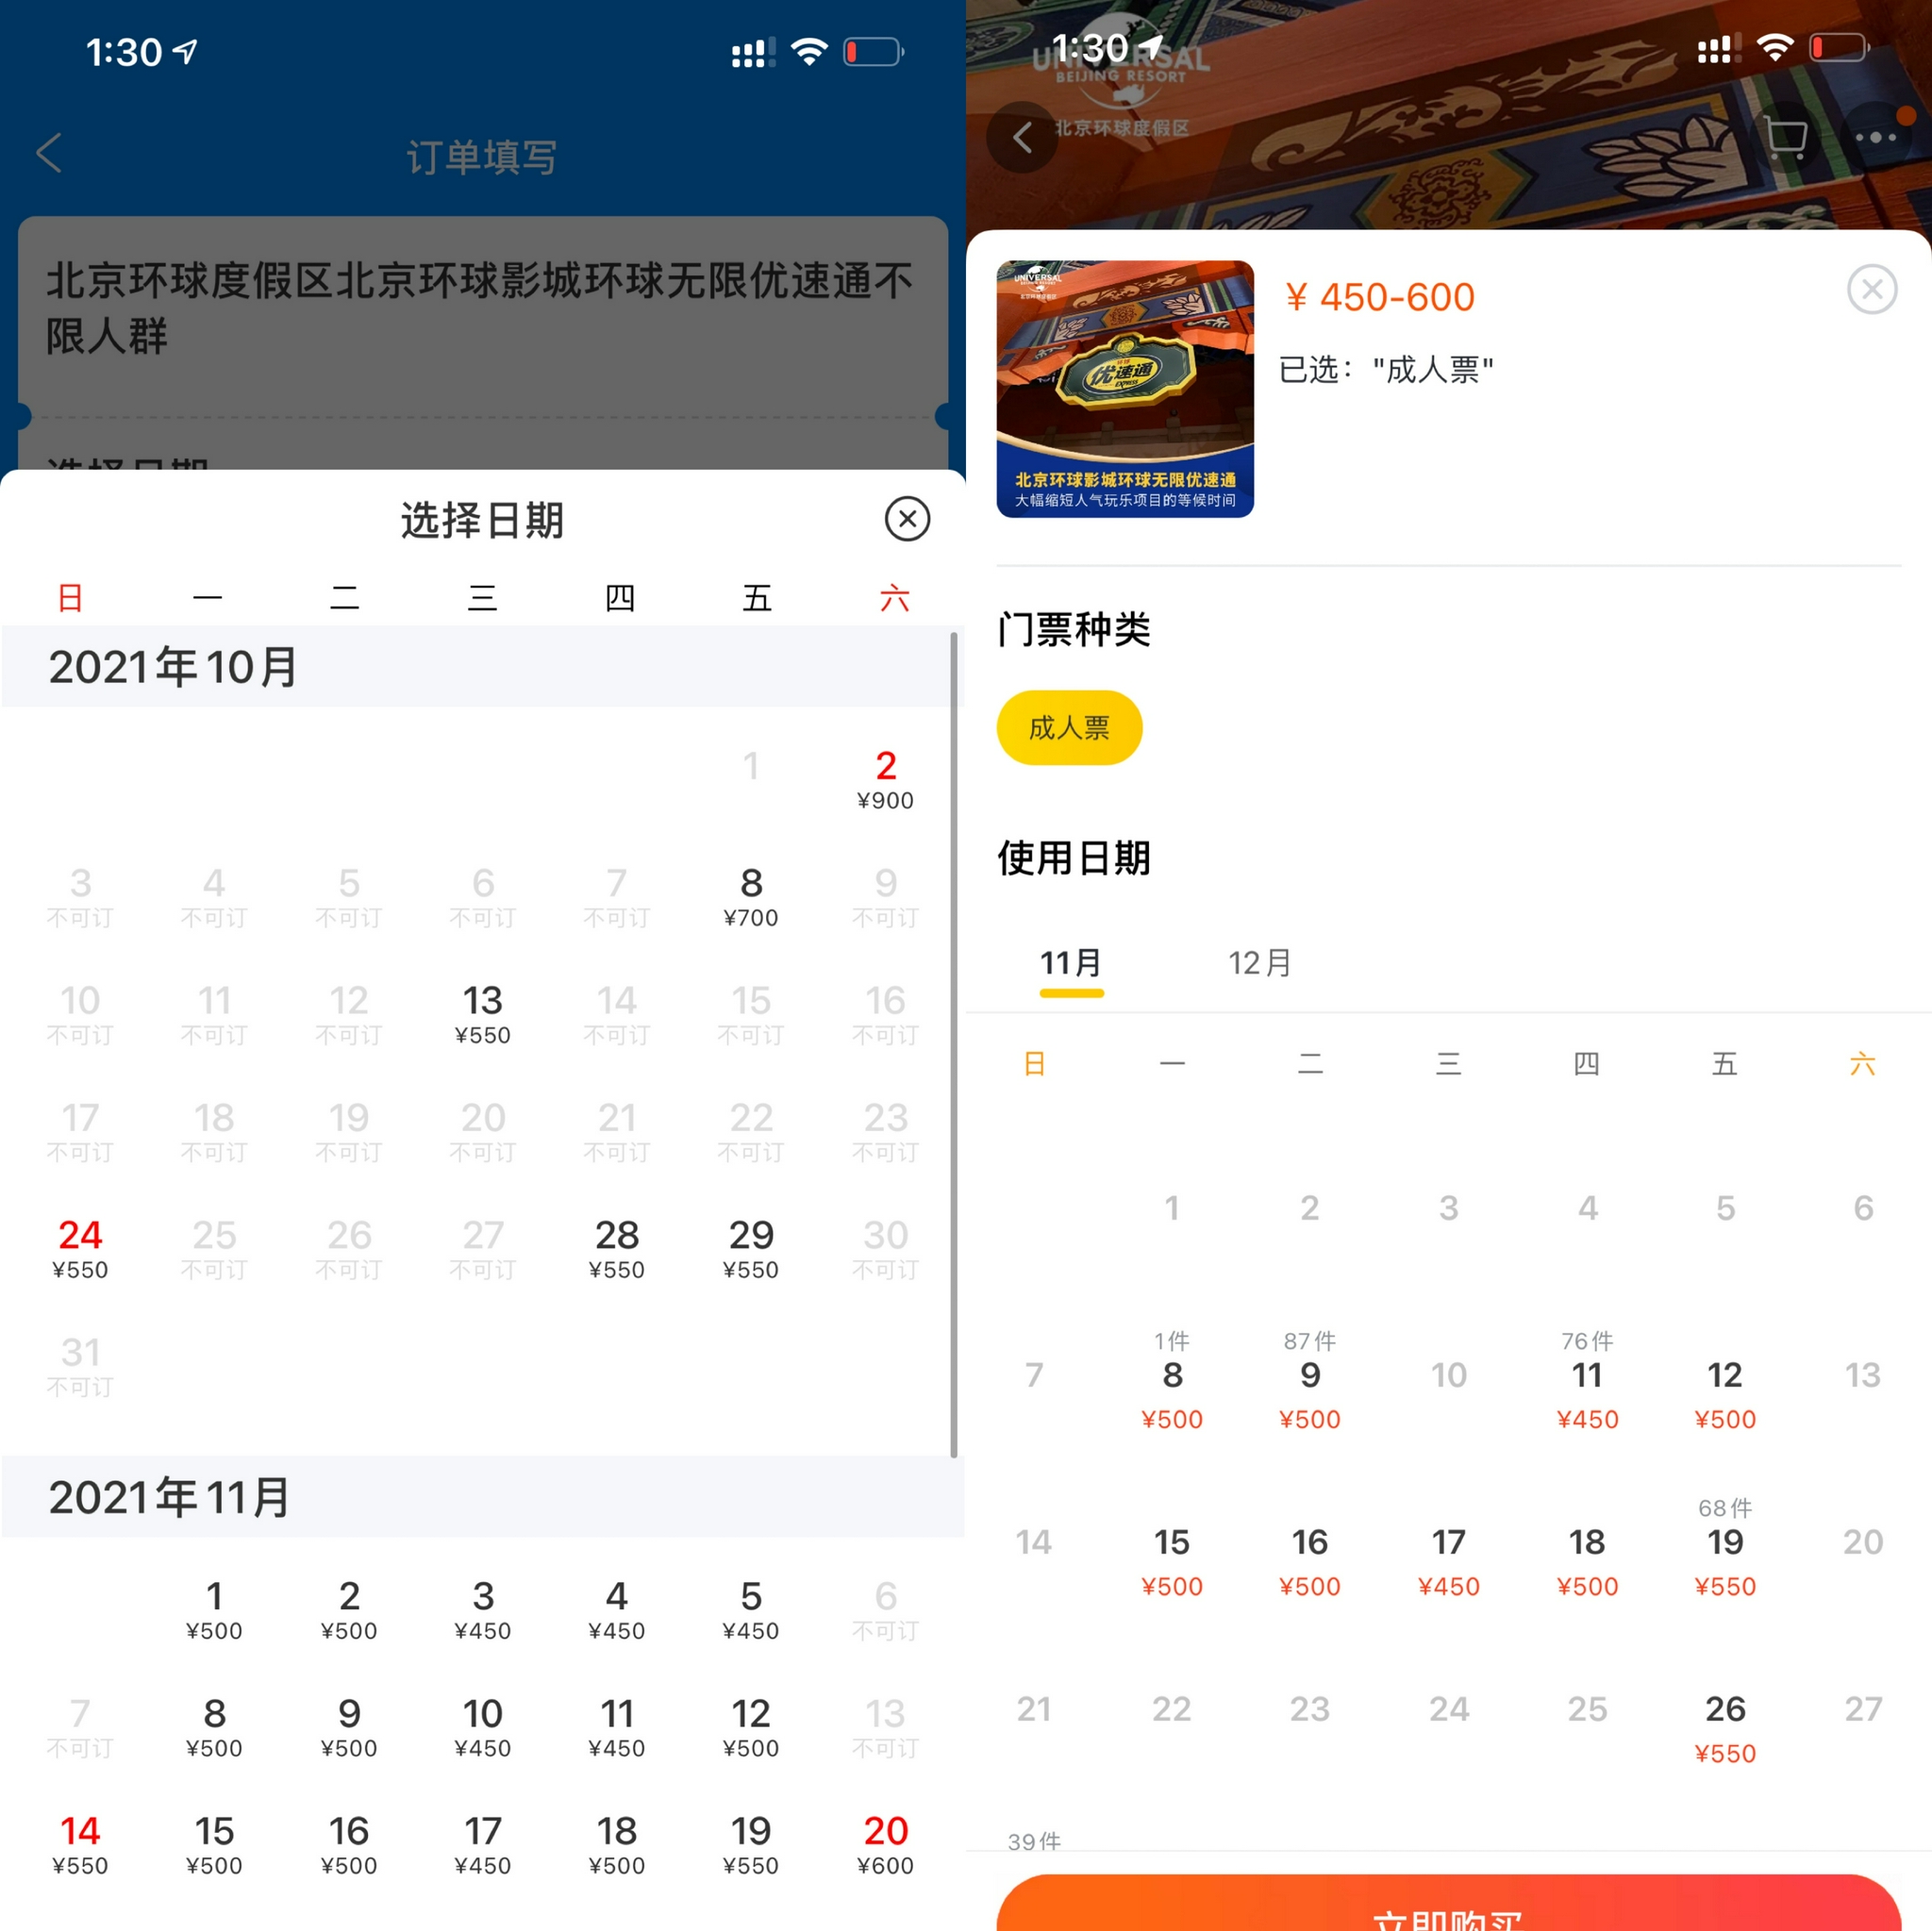 多个在线旅游平台平台9月甚至10月的北京环球影城环球无限优速通票也全部售罄。